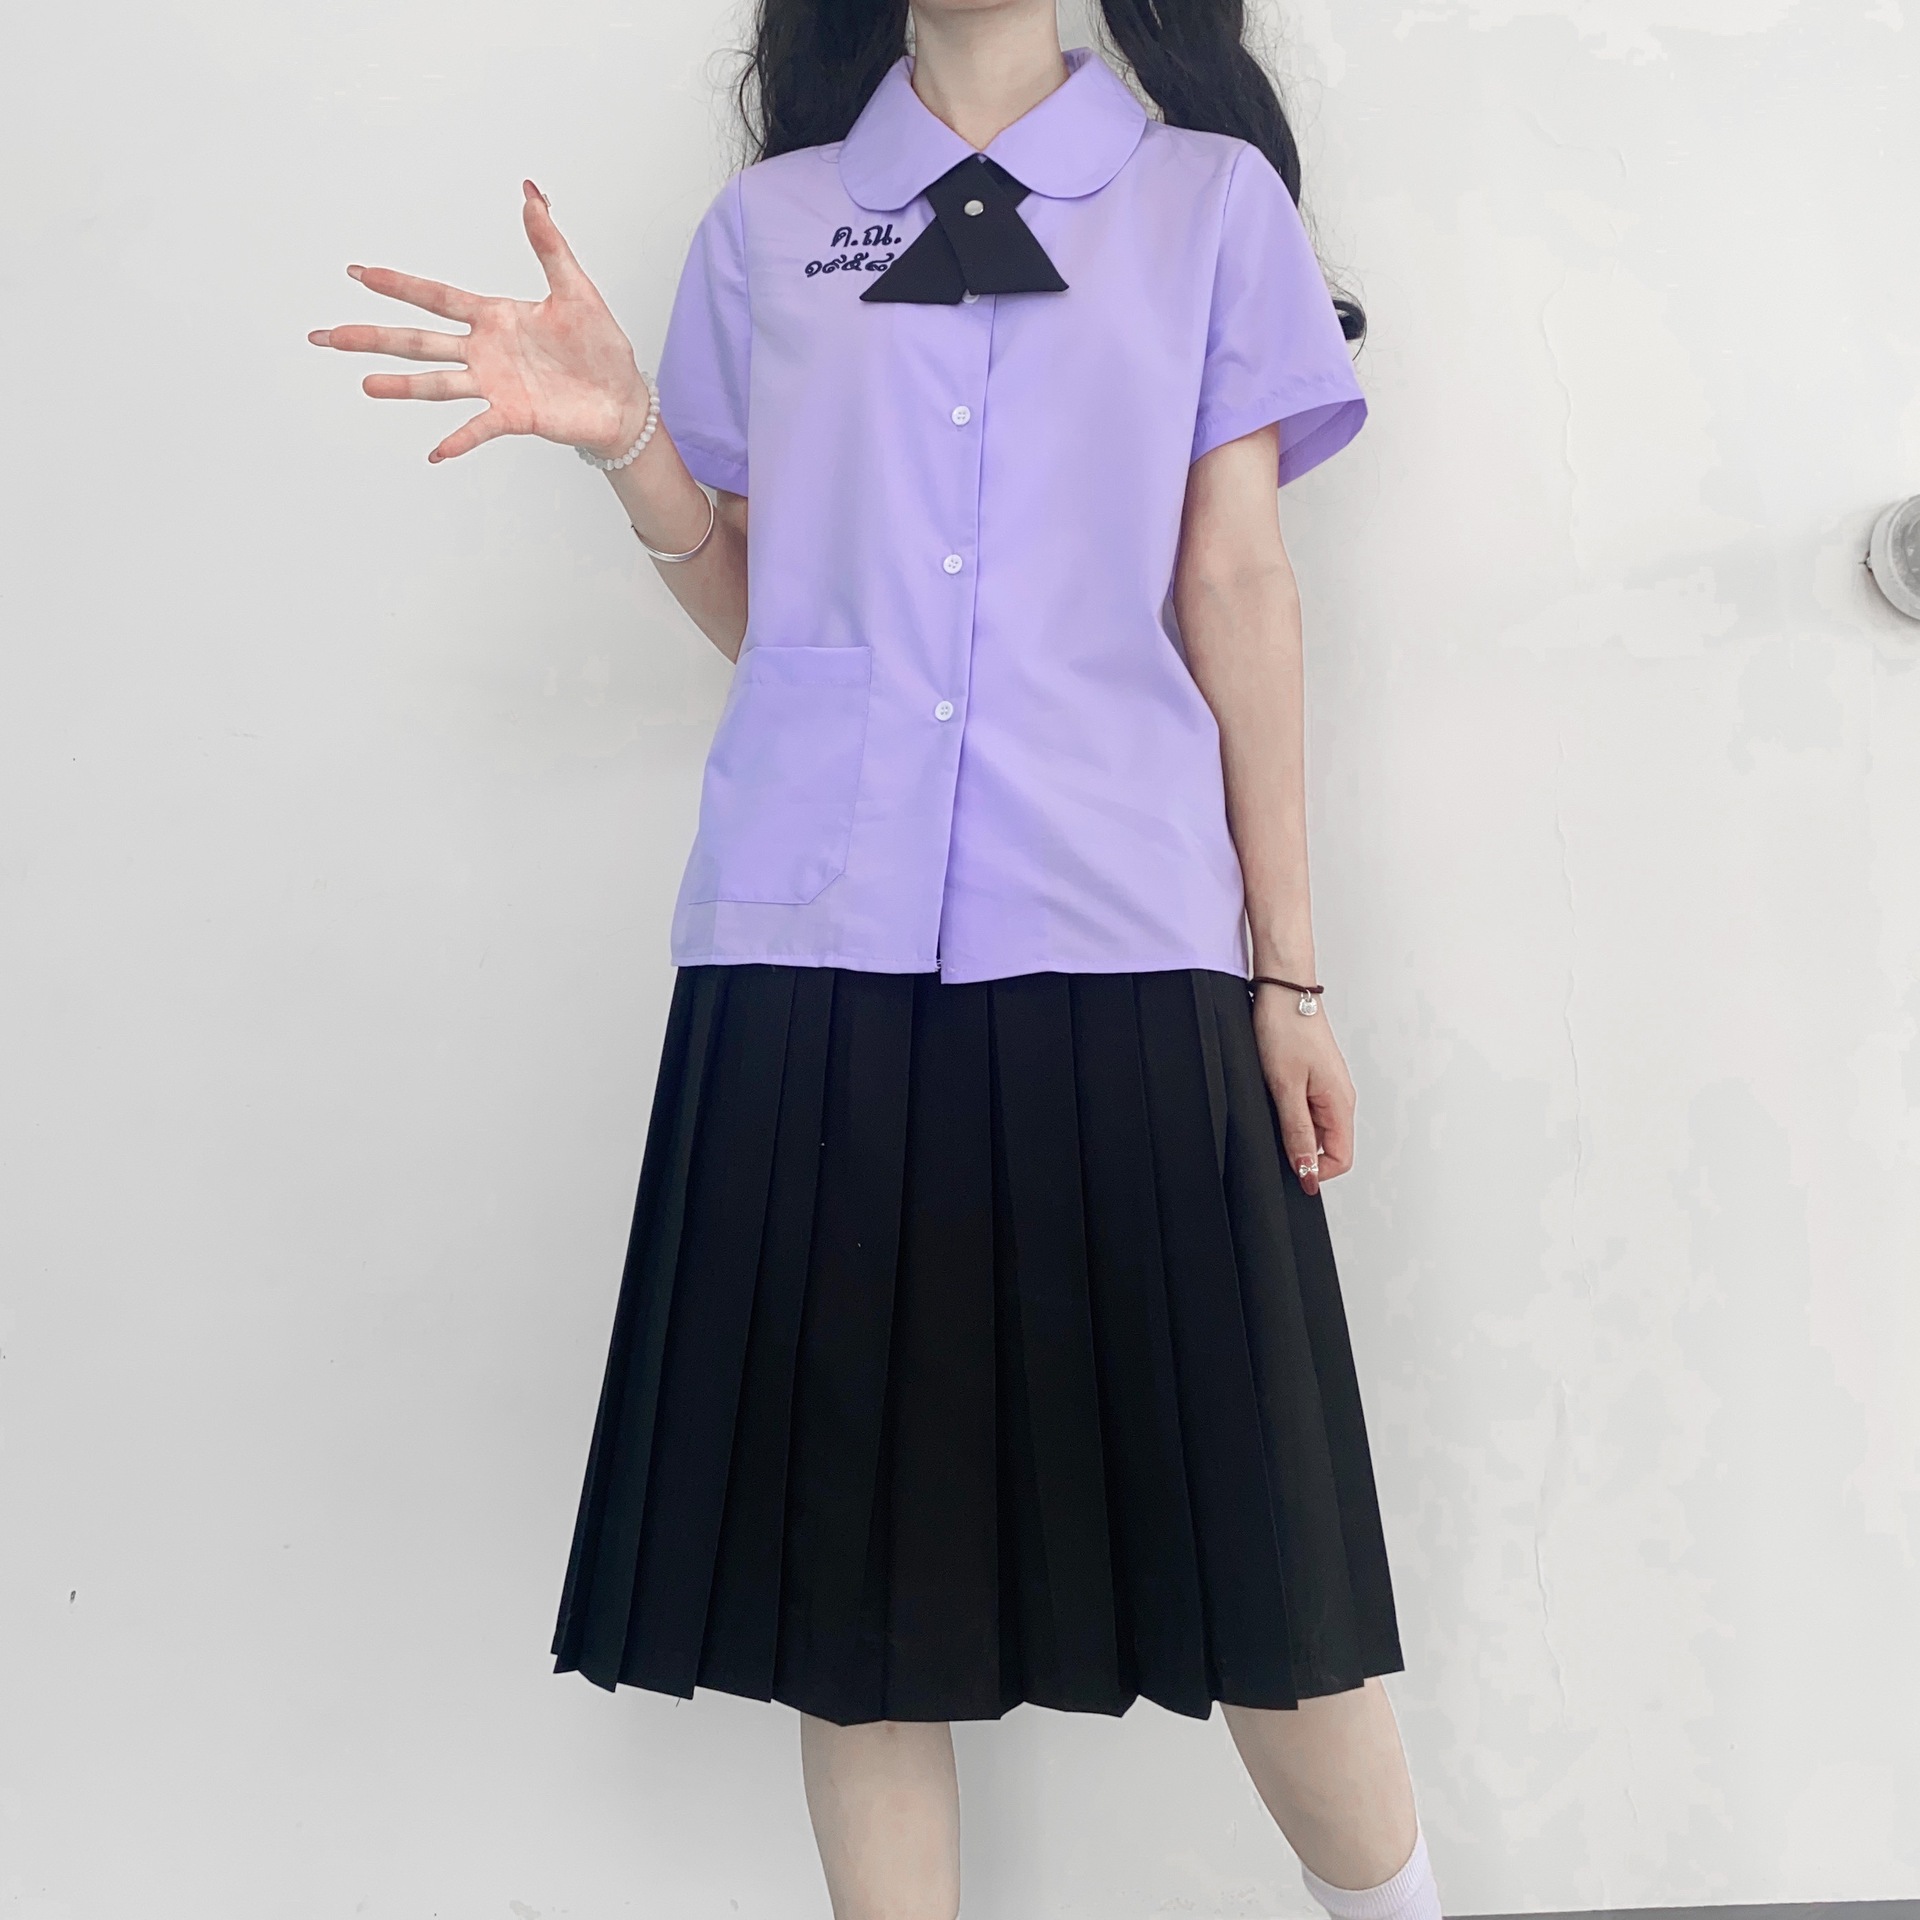 泰国校服娜诺禁忌女孩小水同款衬衫 裙子夏季泰式校服